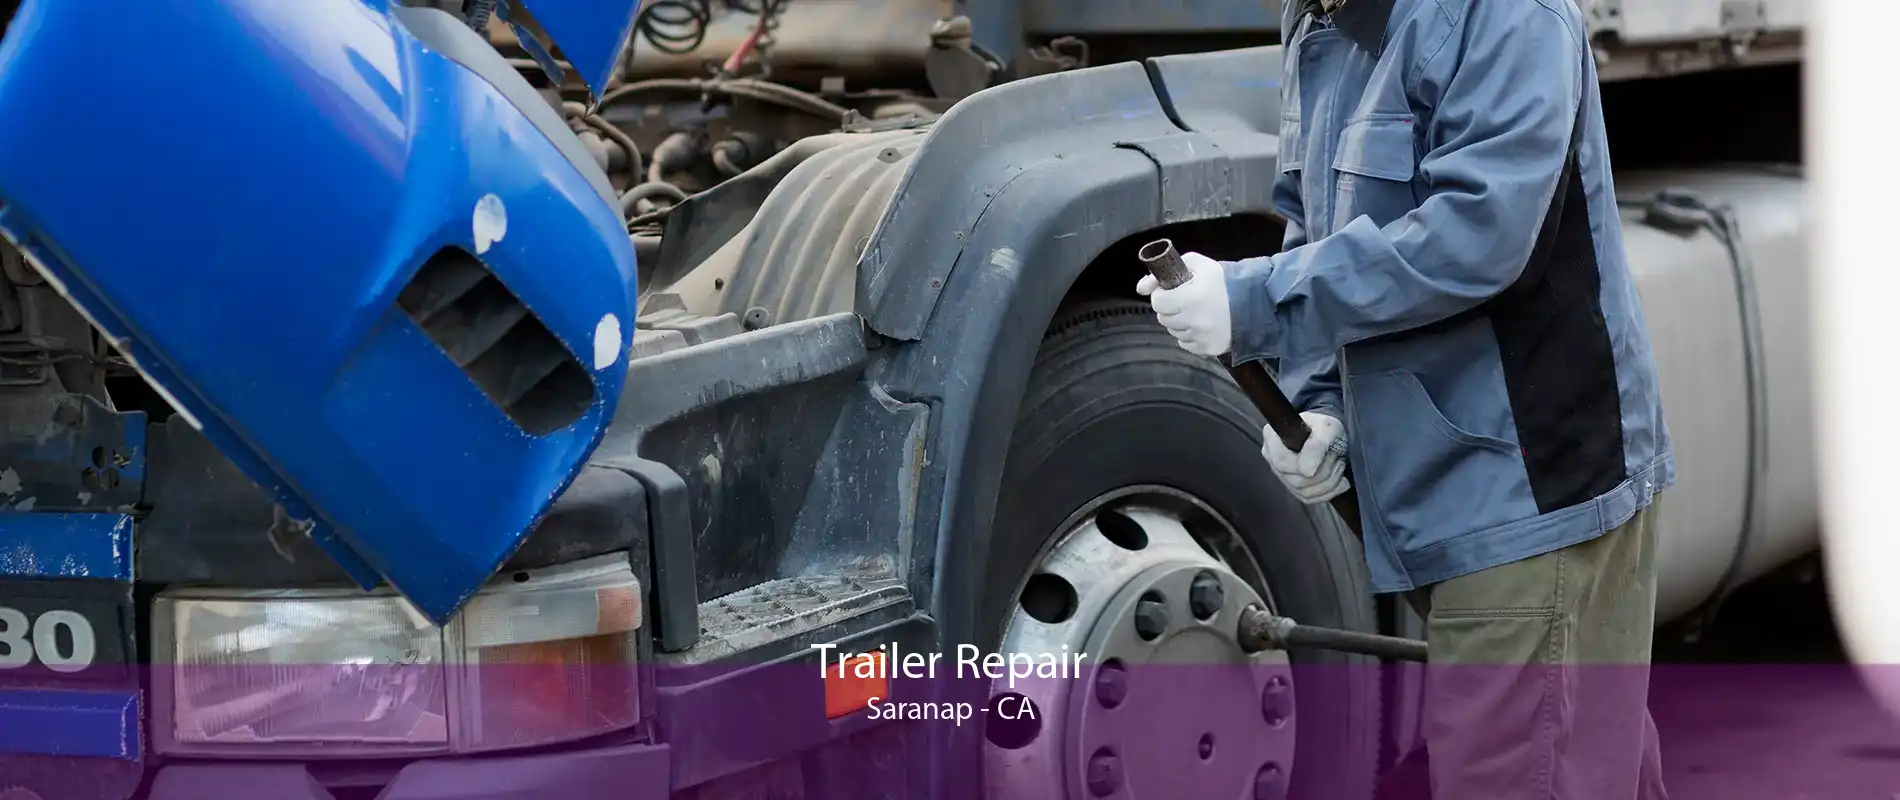 Trailer Repair Saranap - CA